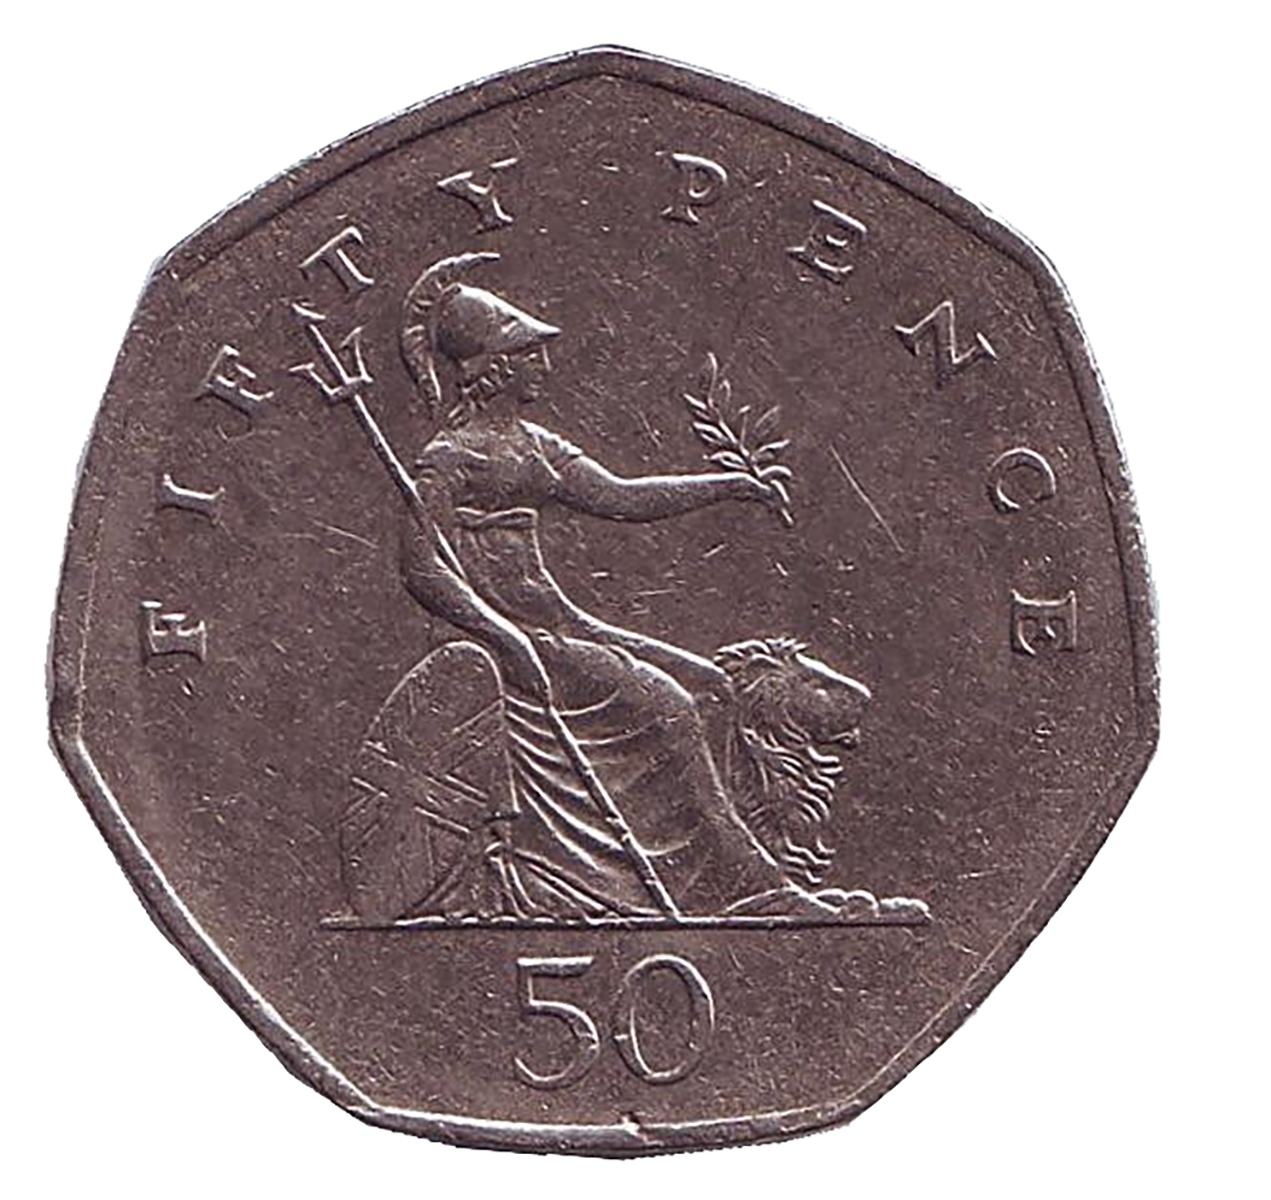 Монета номиналом 50 пенсов. Великобритания, 1997